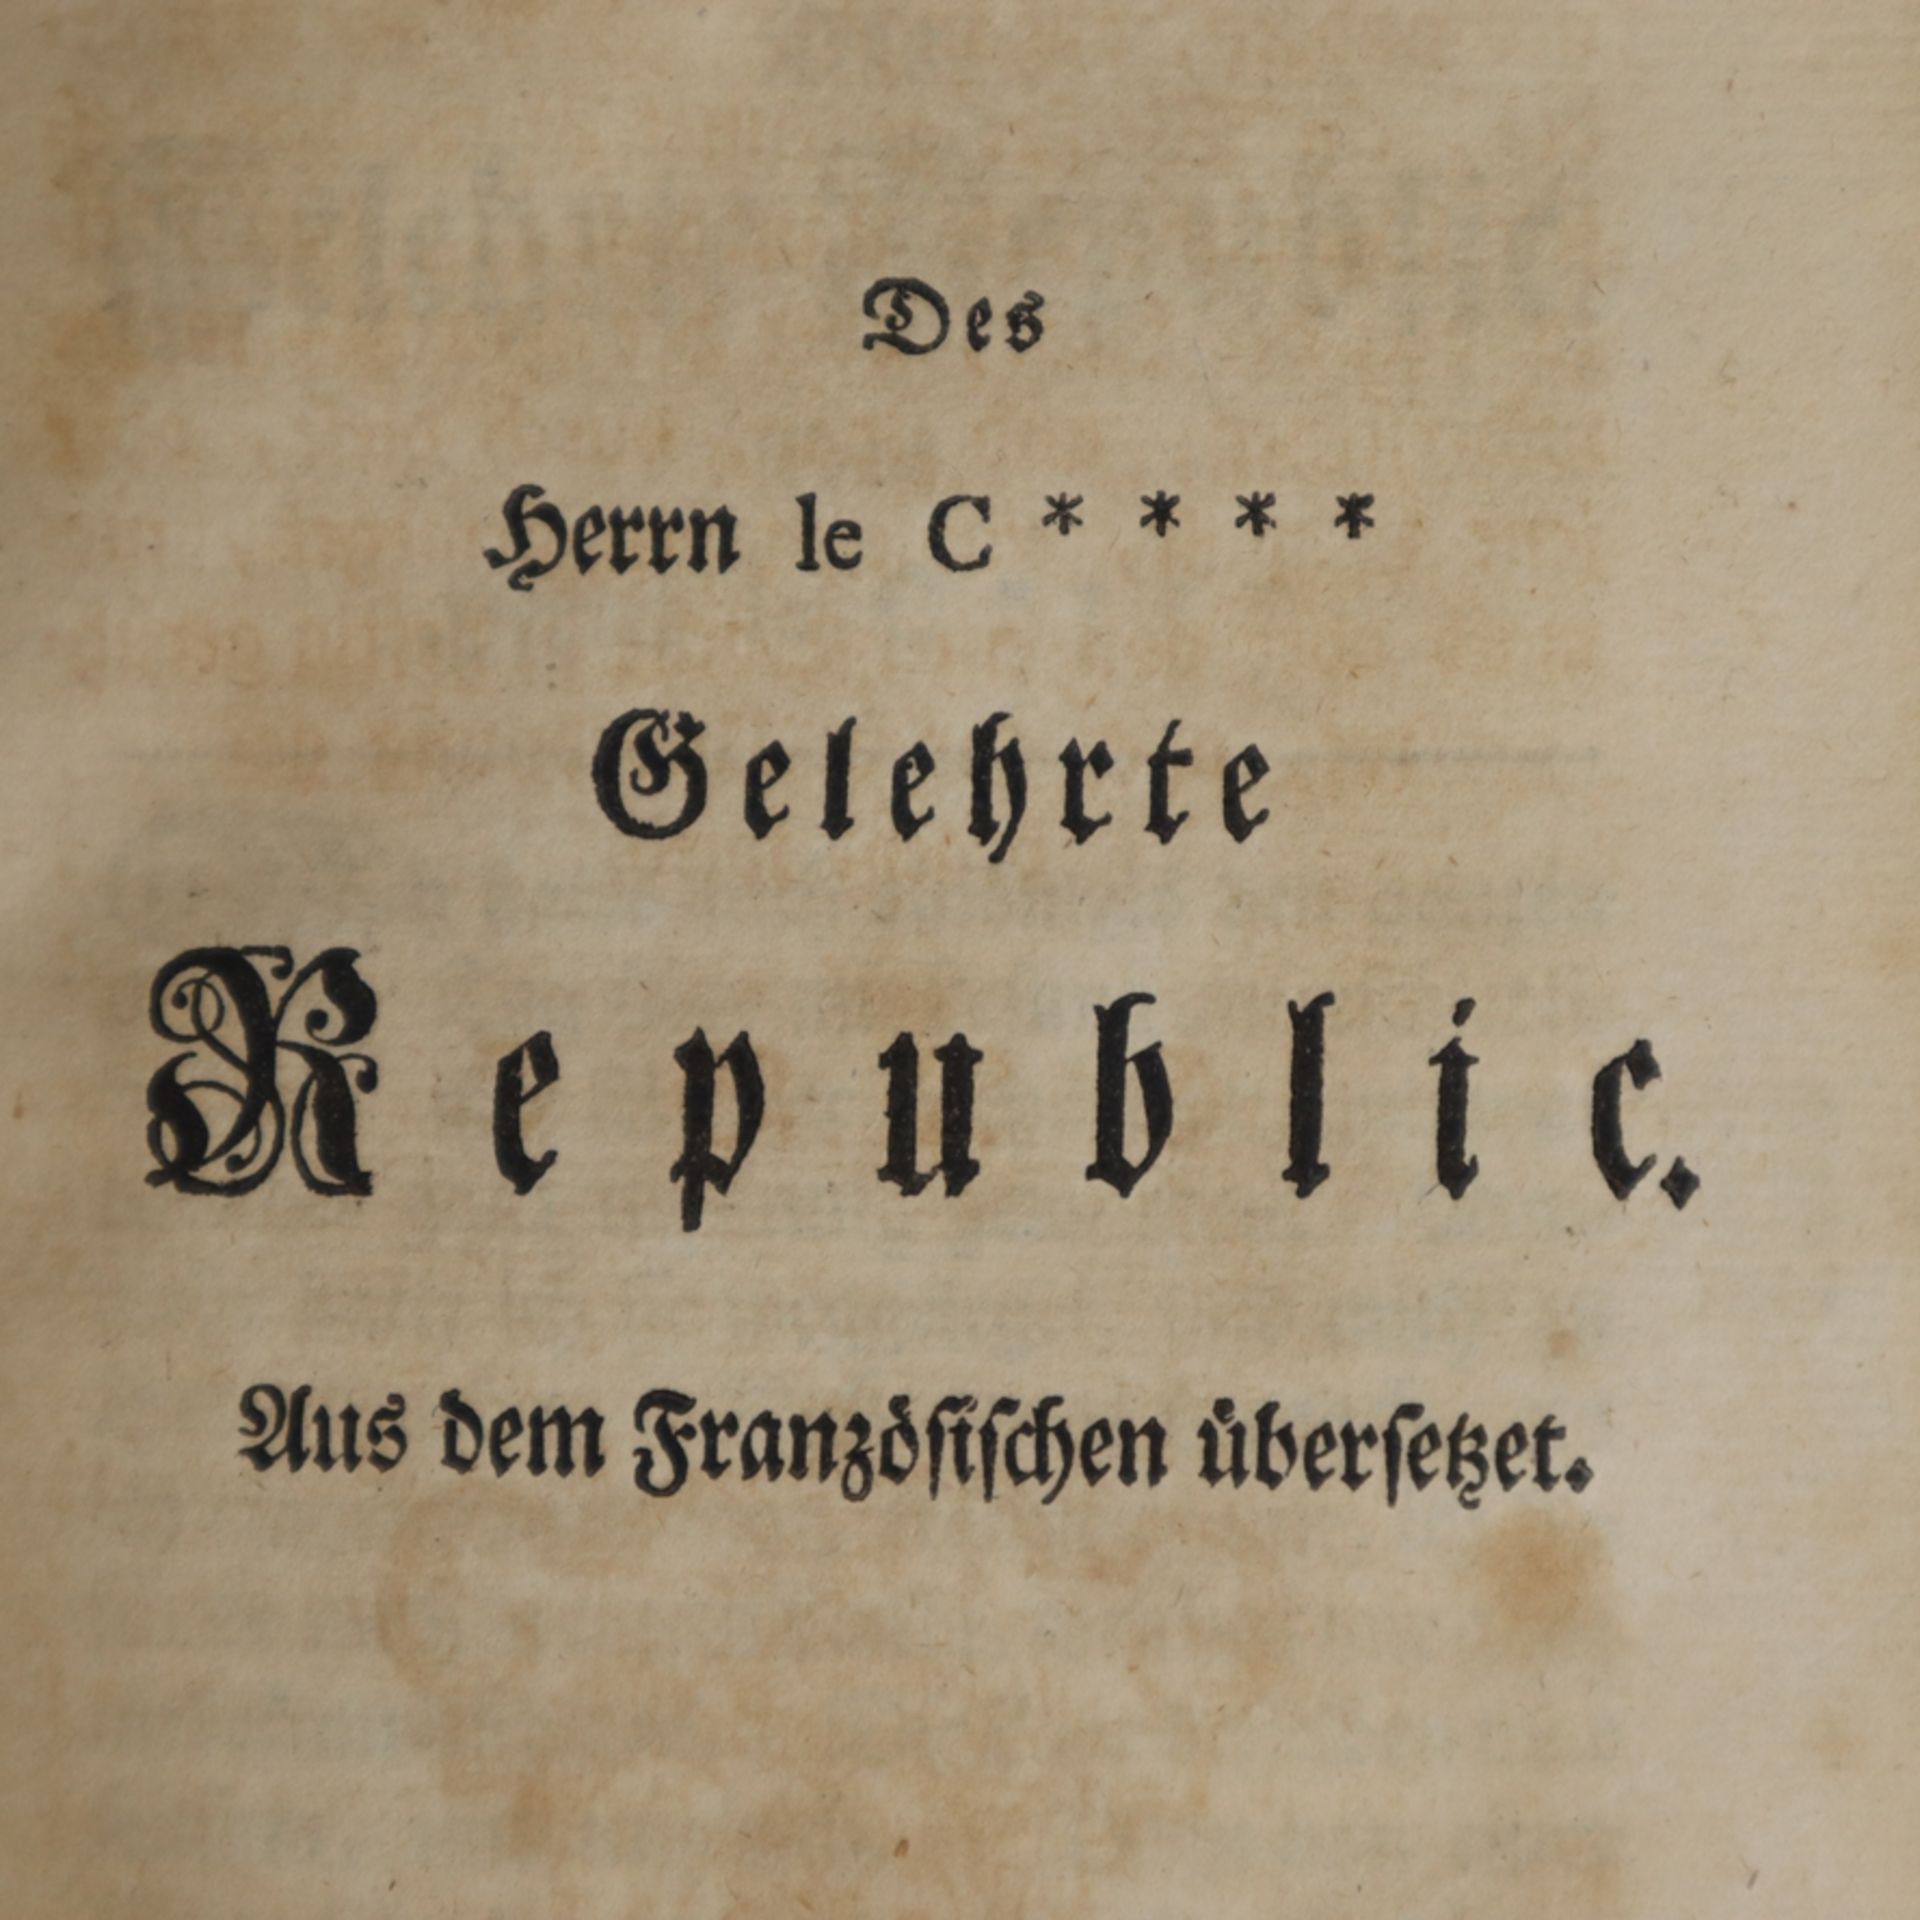 Saavedra, Diego - Die Gelehrte Republic, Gleditschische Buchhandlung, Leipzig 1748, 112, CXII, - Bild 4 aus 6